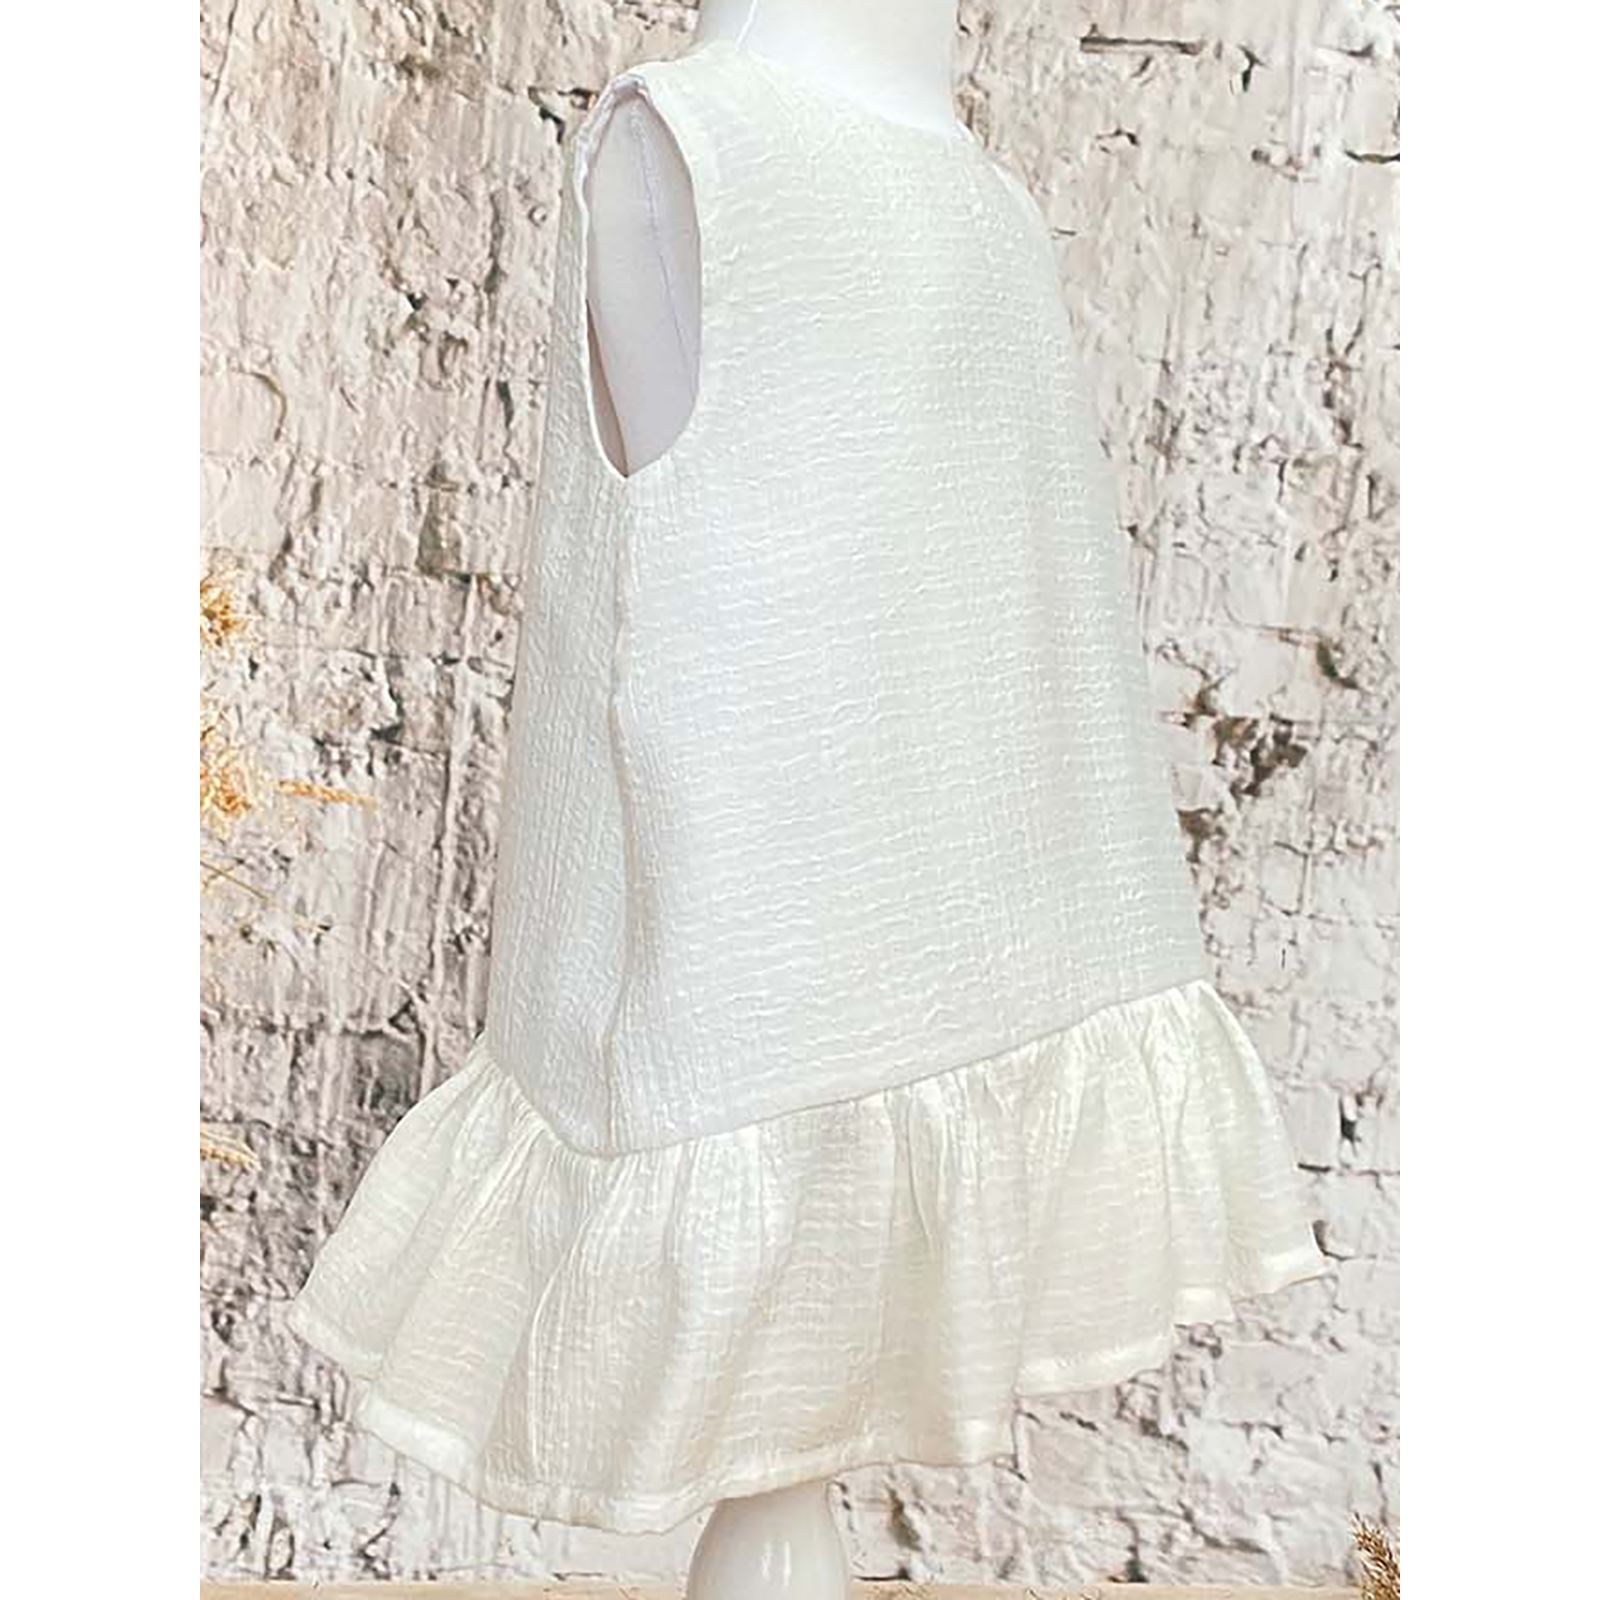 Shecco Babba Kız Çocuk Eteği Fırfırlı Elbise 6-10 Yaş Beyaz